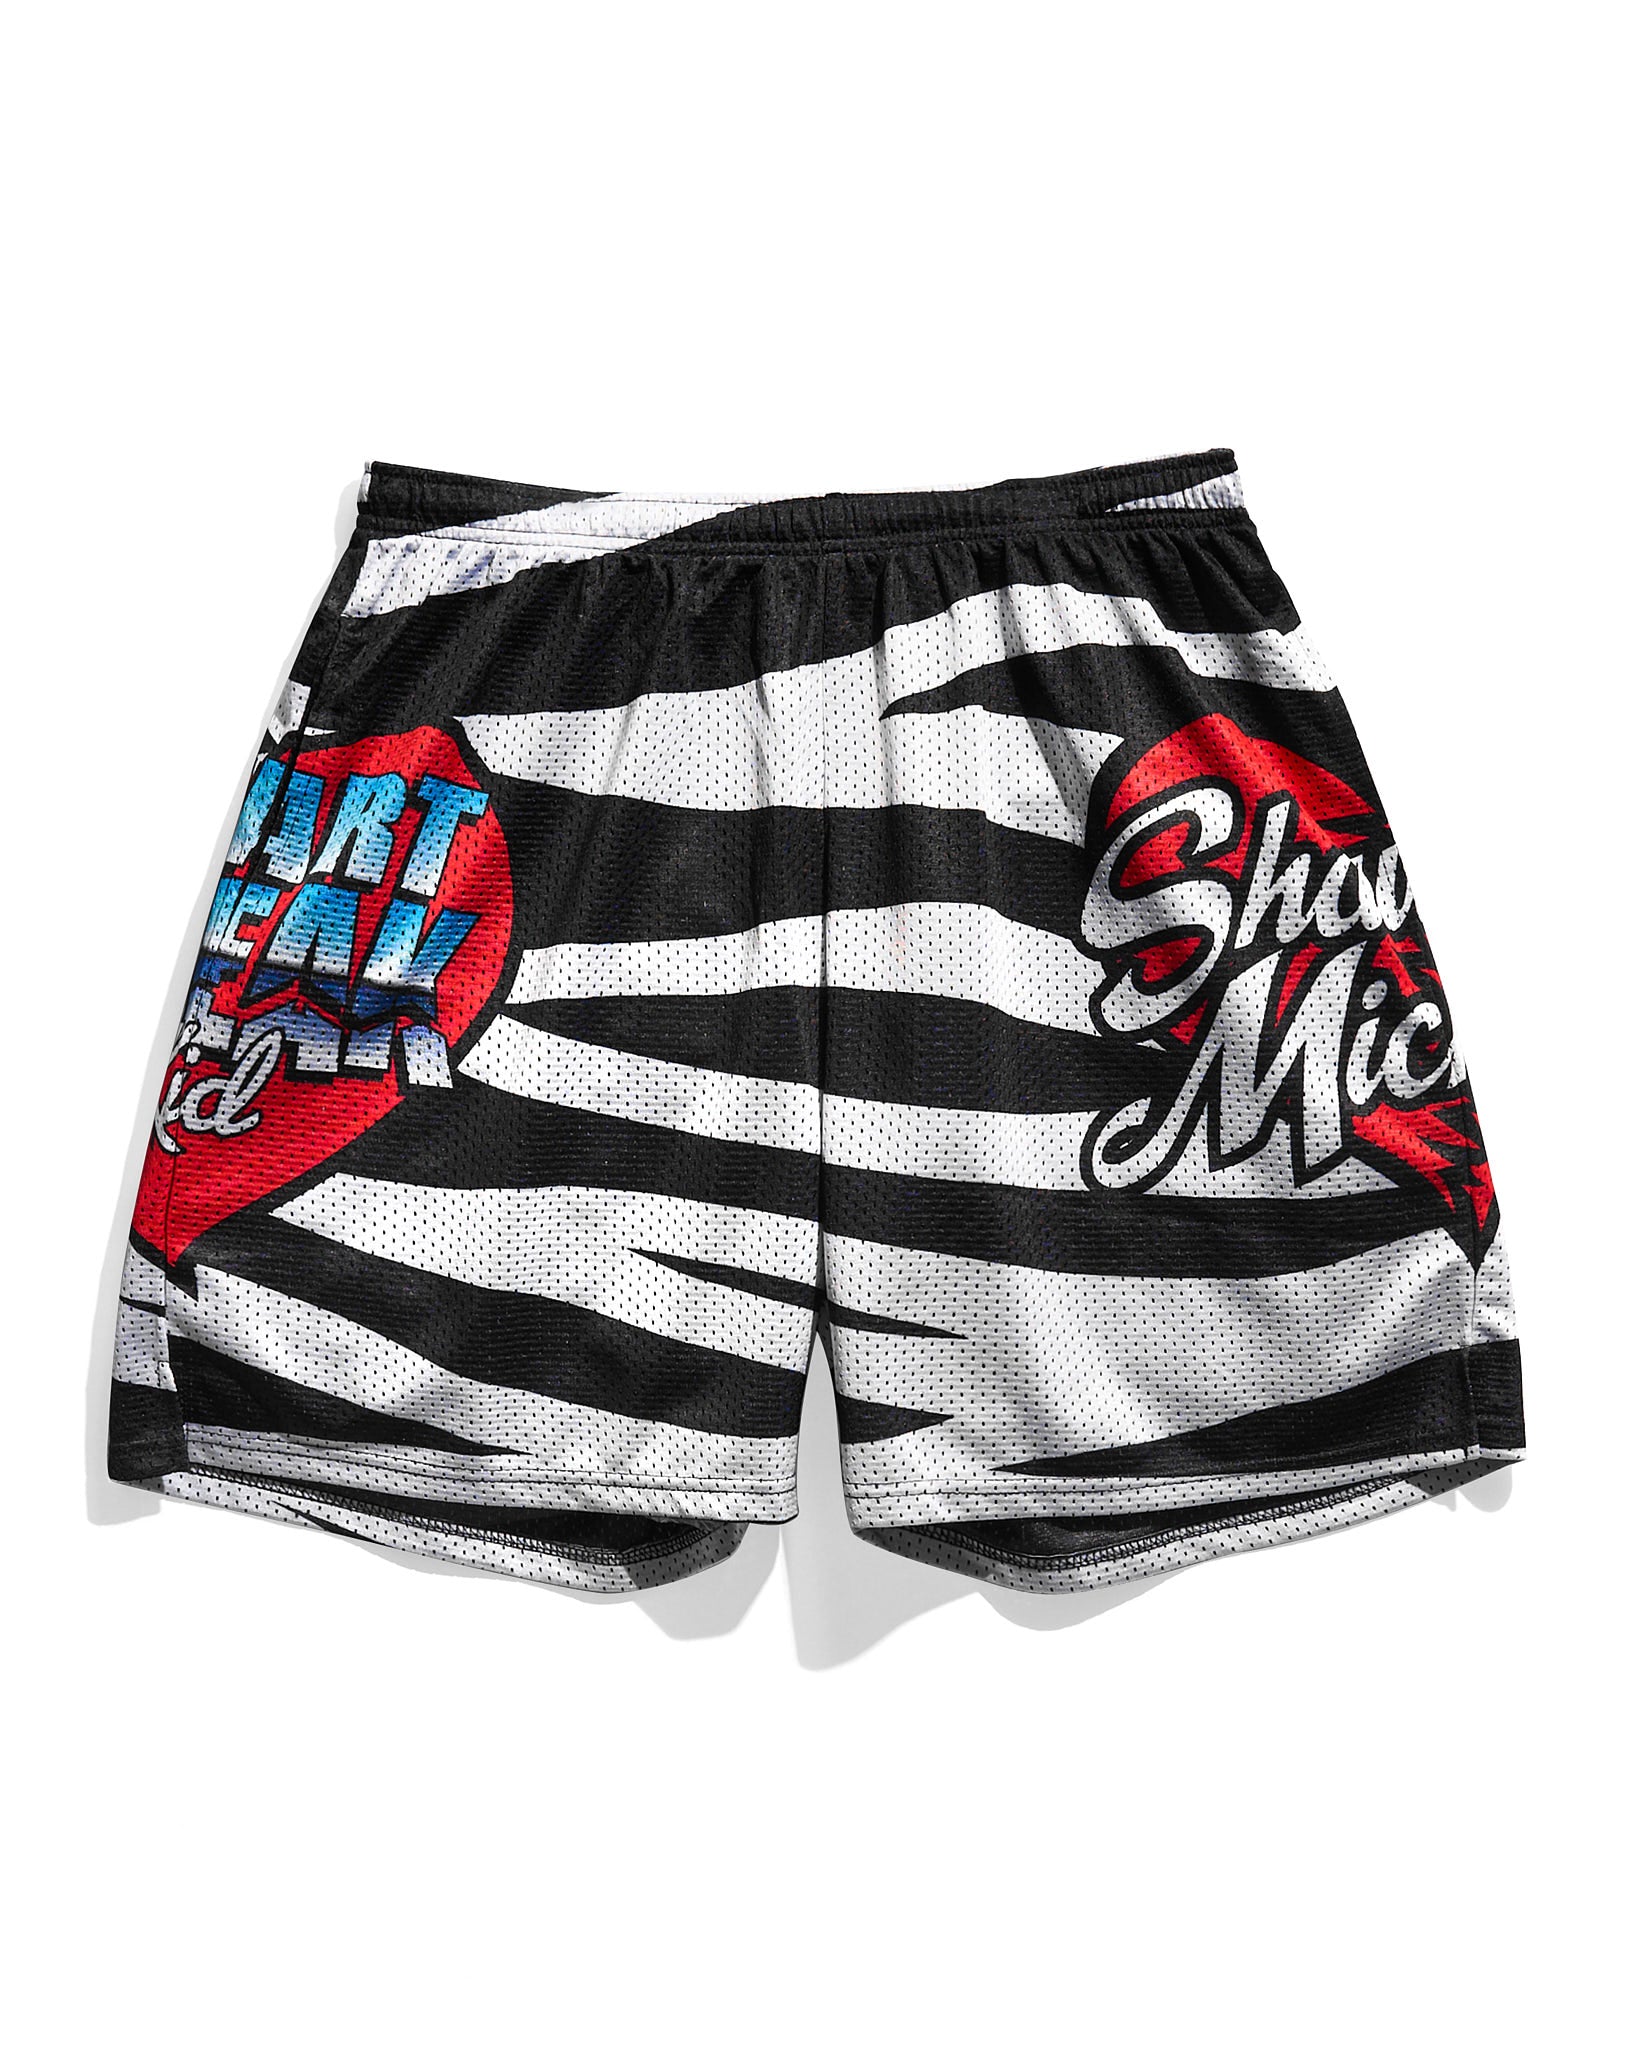 Shawn Michaels HBK Zebra Retro Shorts